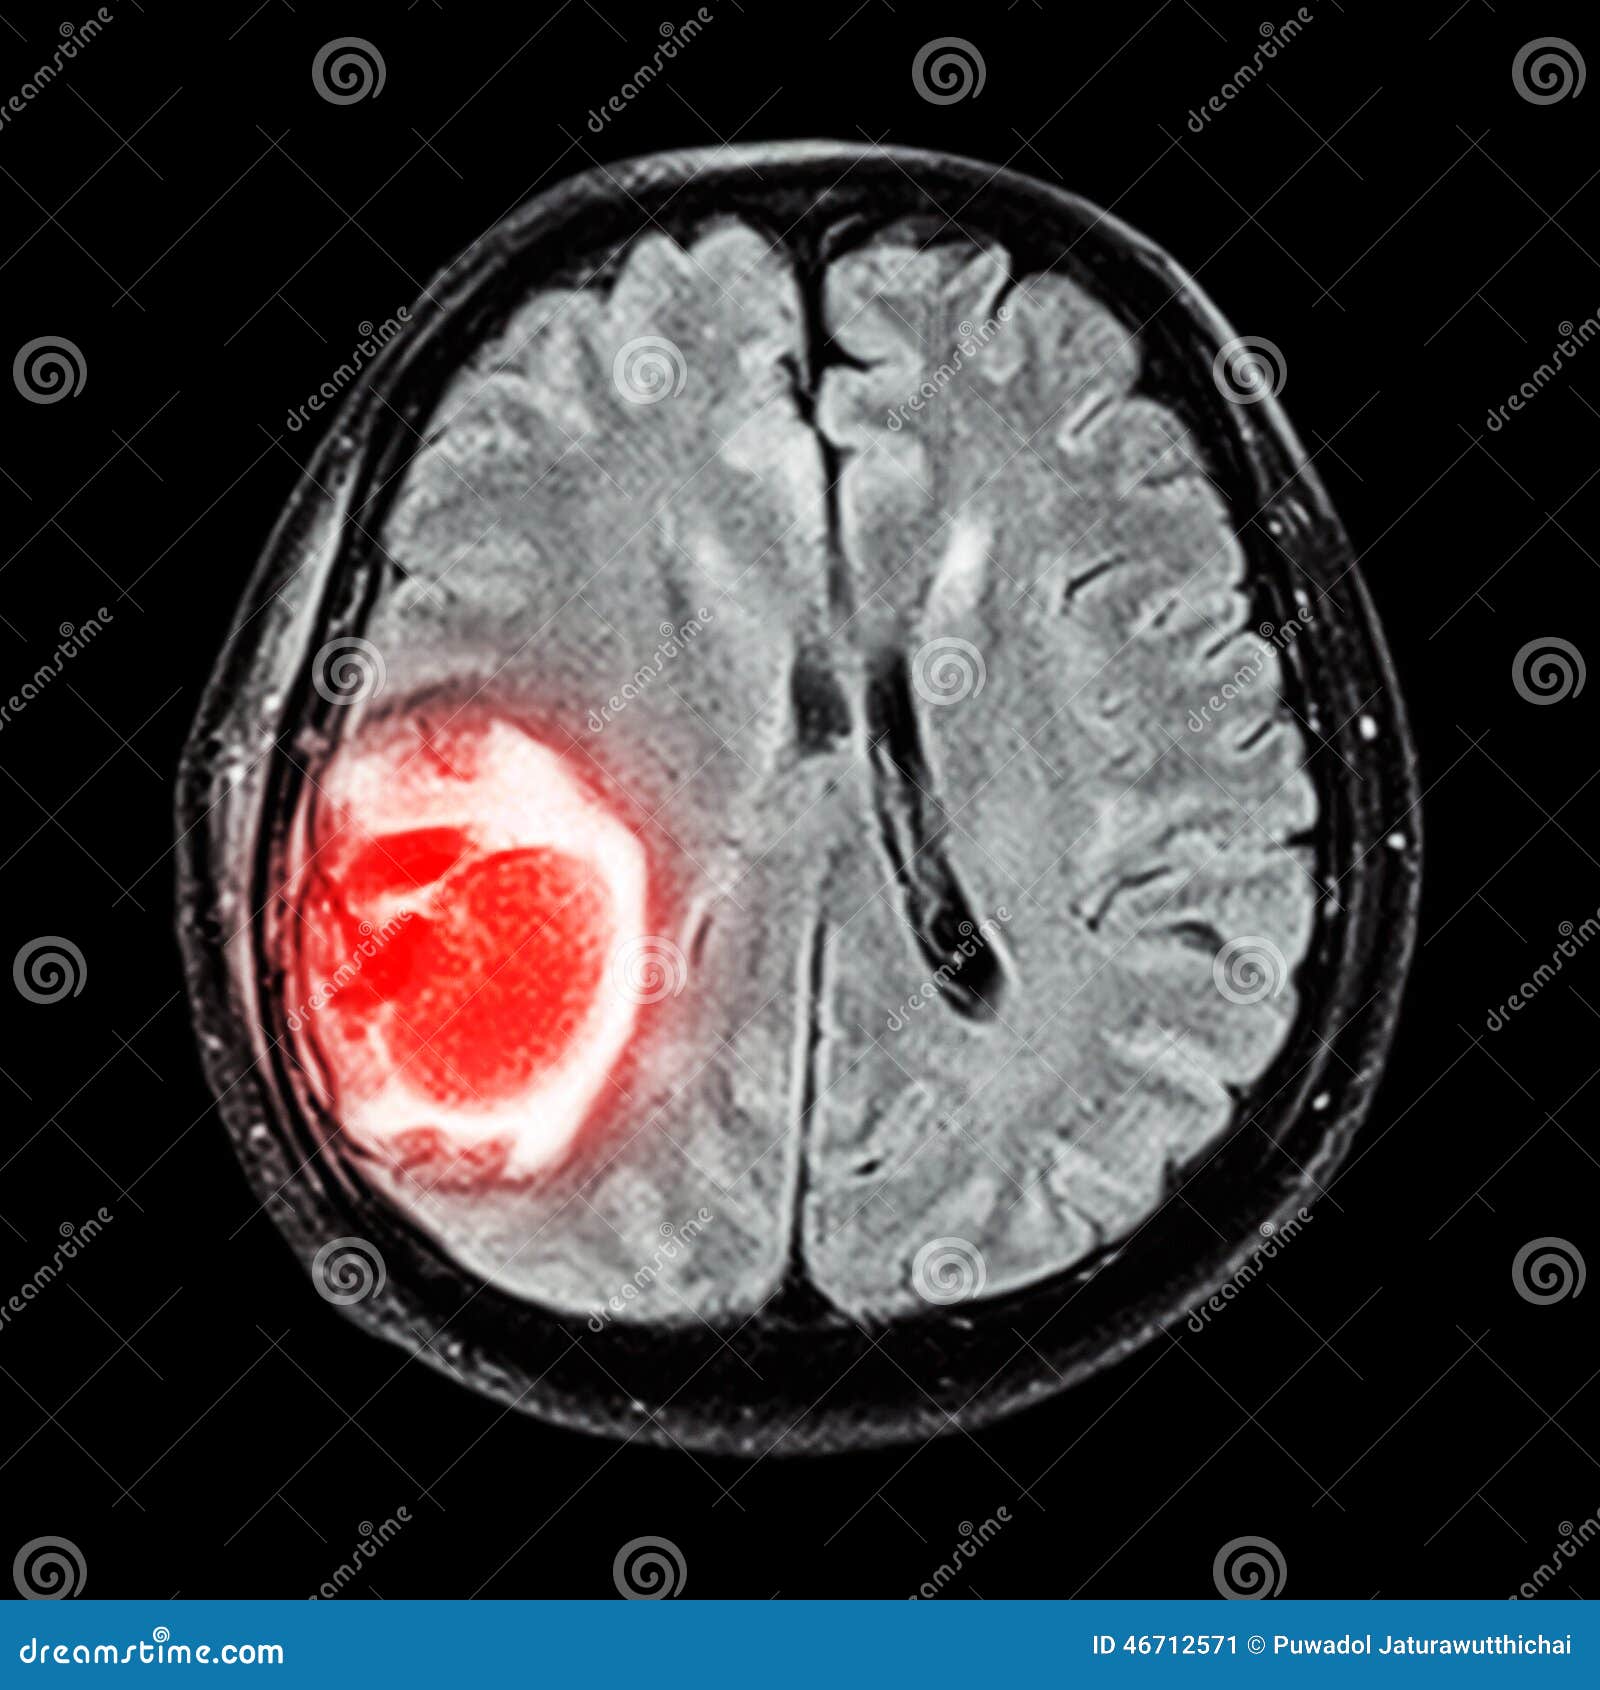 mri brain : show brain tumor at right parietal lobe of cerebrum